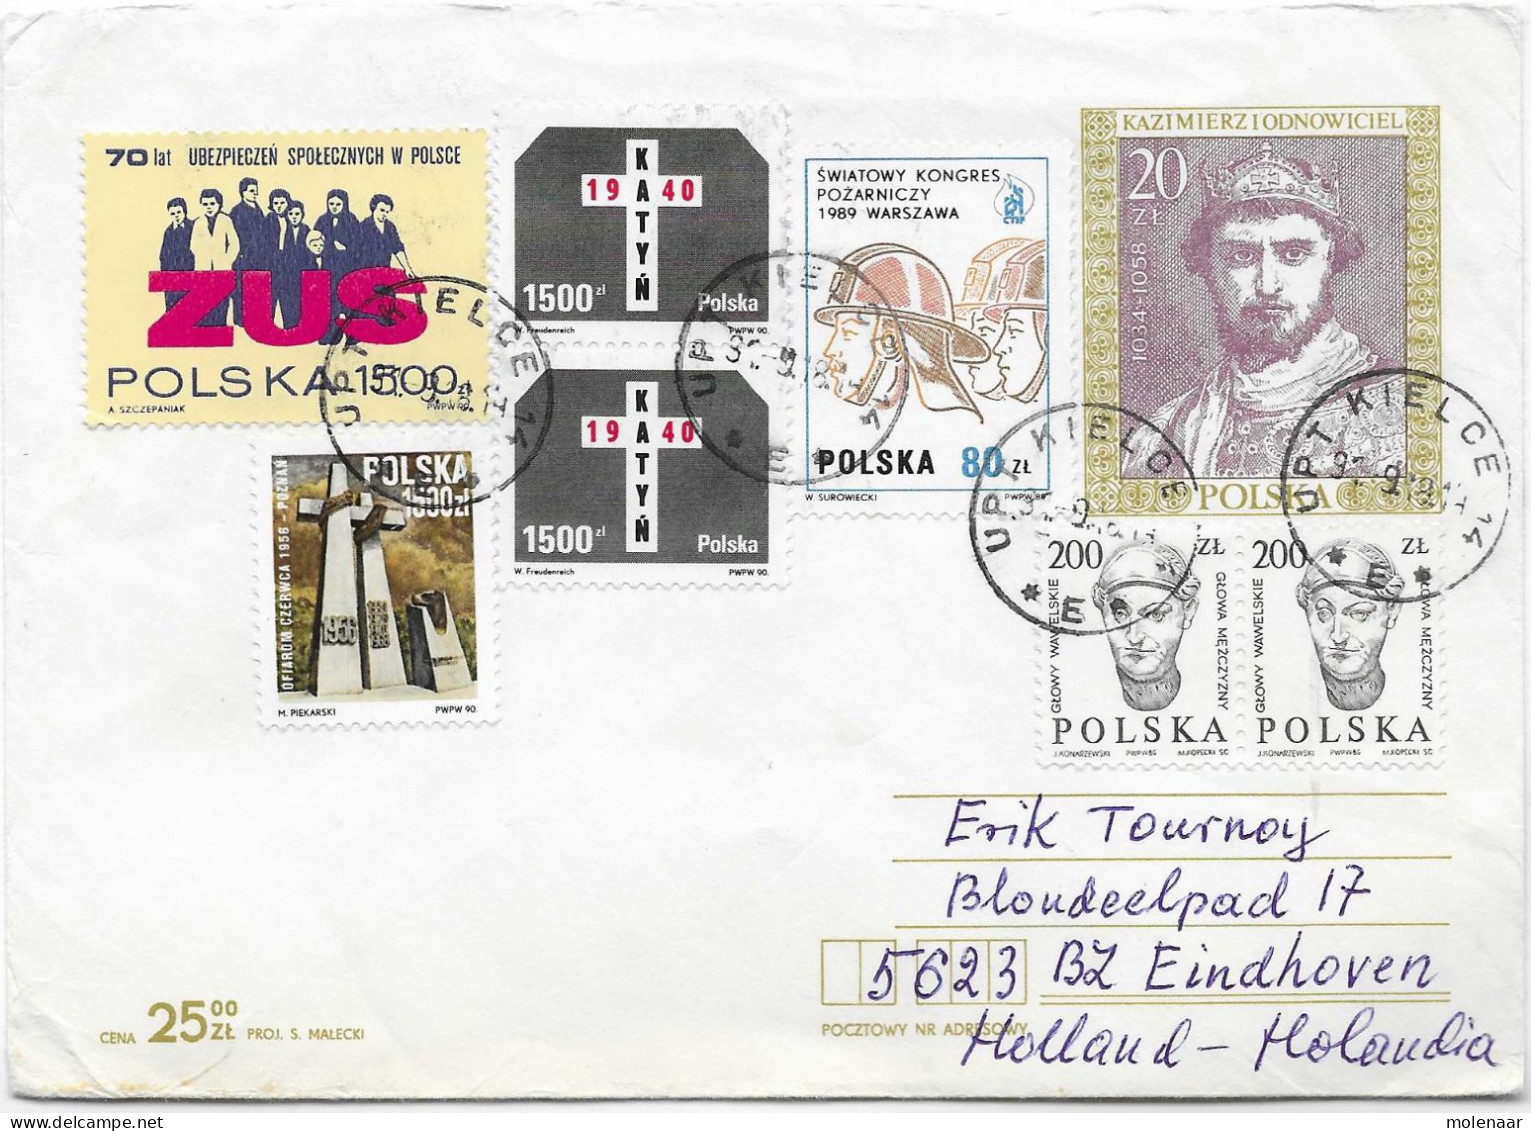 Postzegels > Europa > Polen > Postwaardestukken Briefomslag Met 7 Zegels Bijfrankering (17134) - Enteros Postales